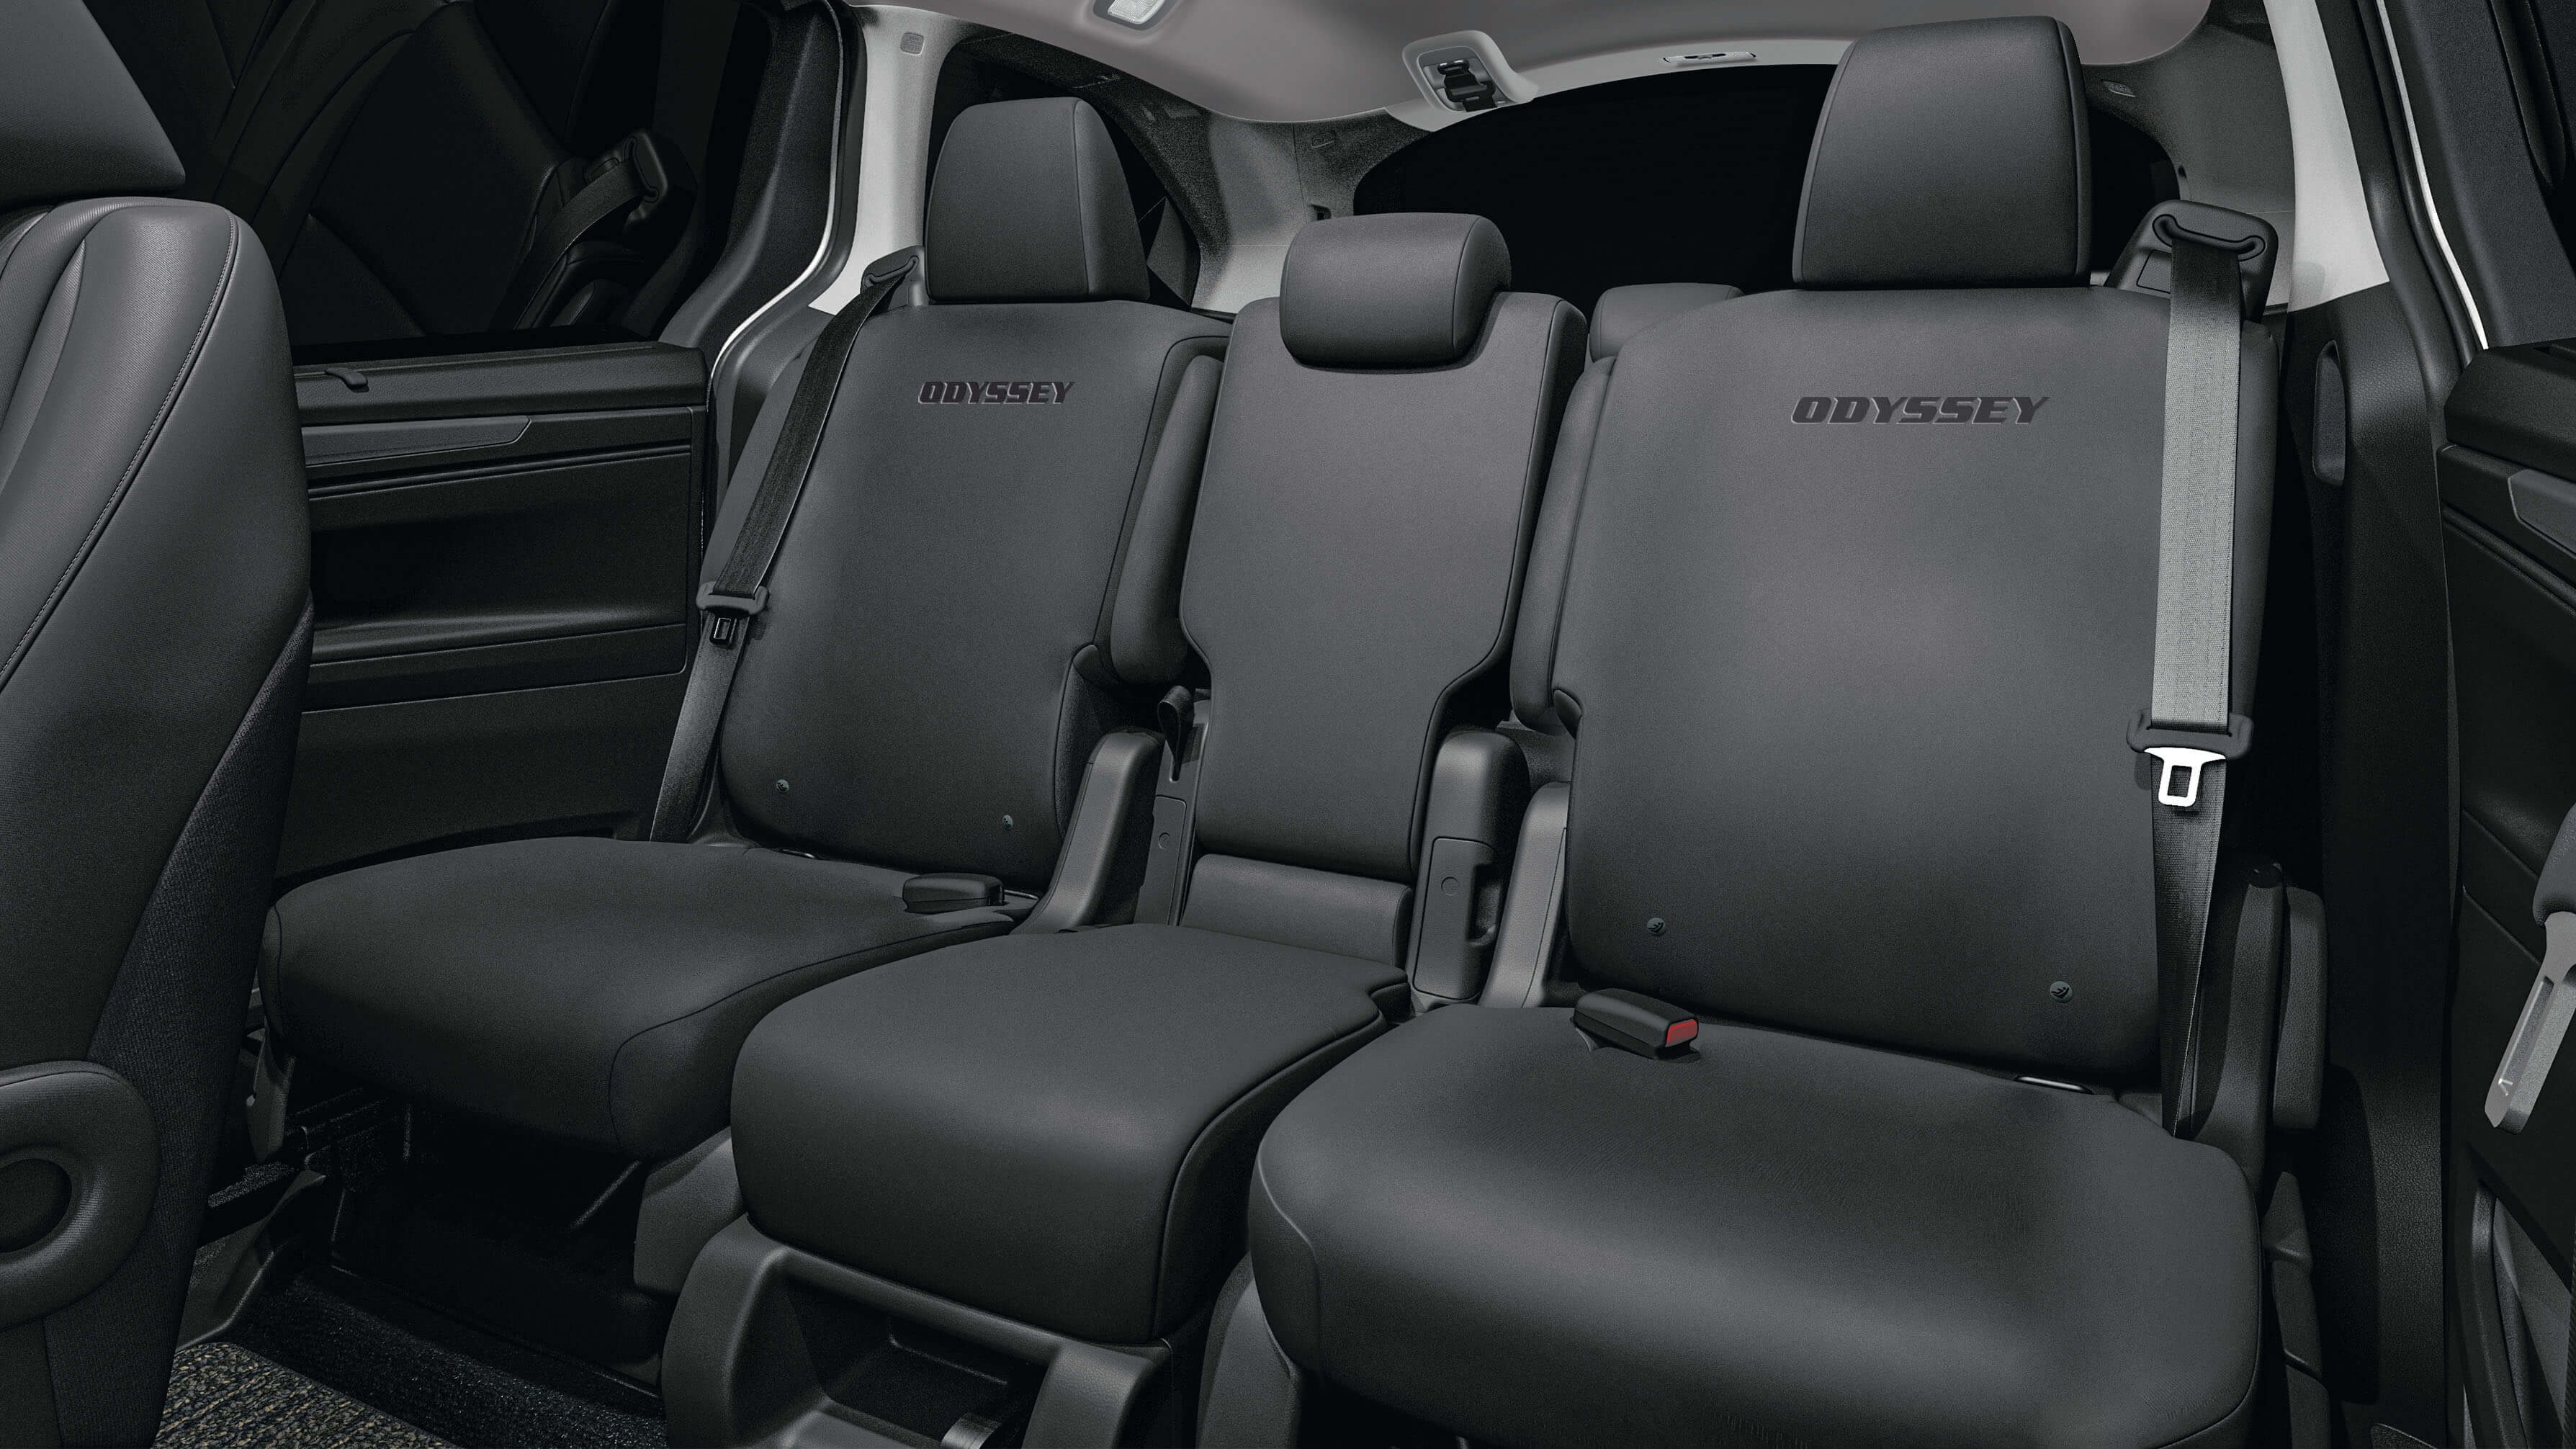 Protège sièges. Protège siège Odyssey.Accessoires de protection pour véhicule. Accessoires Honda. Accessoires Honda Oddysey.